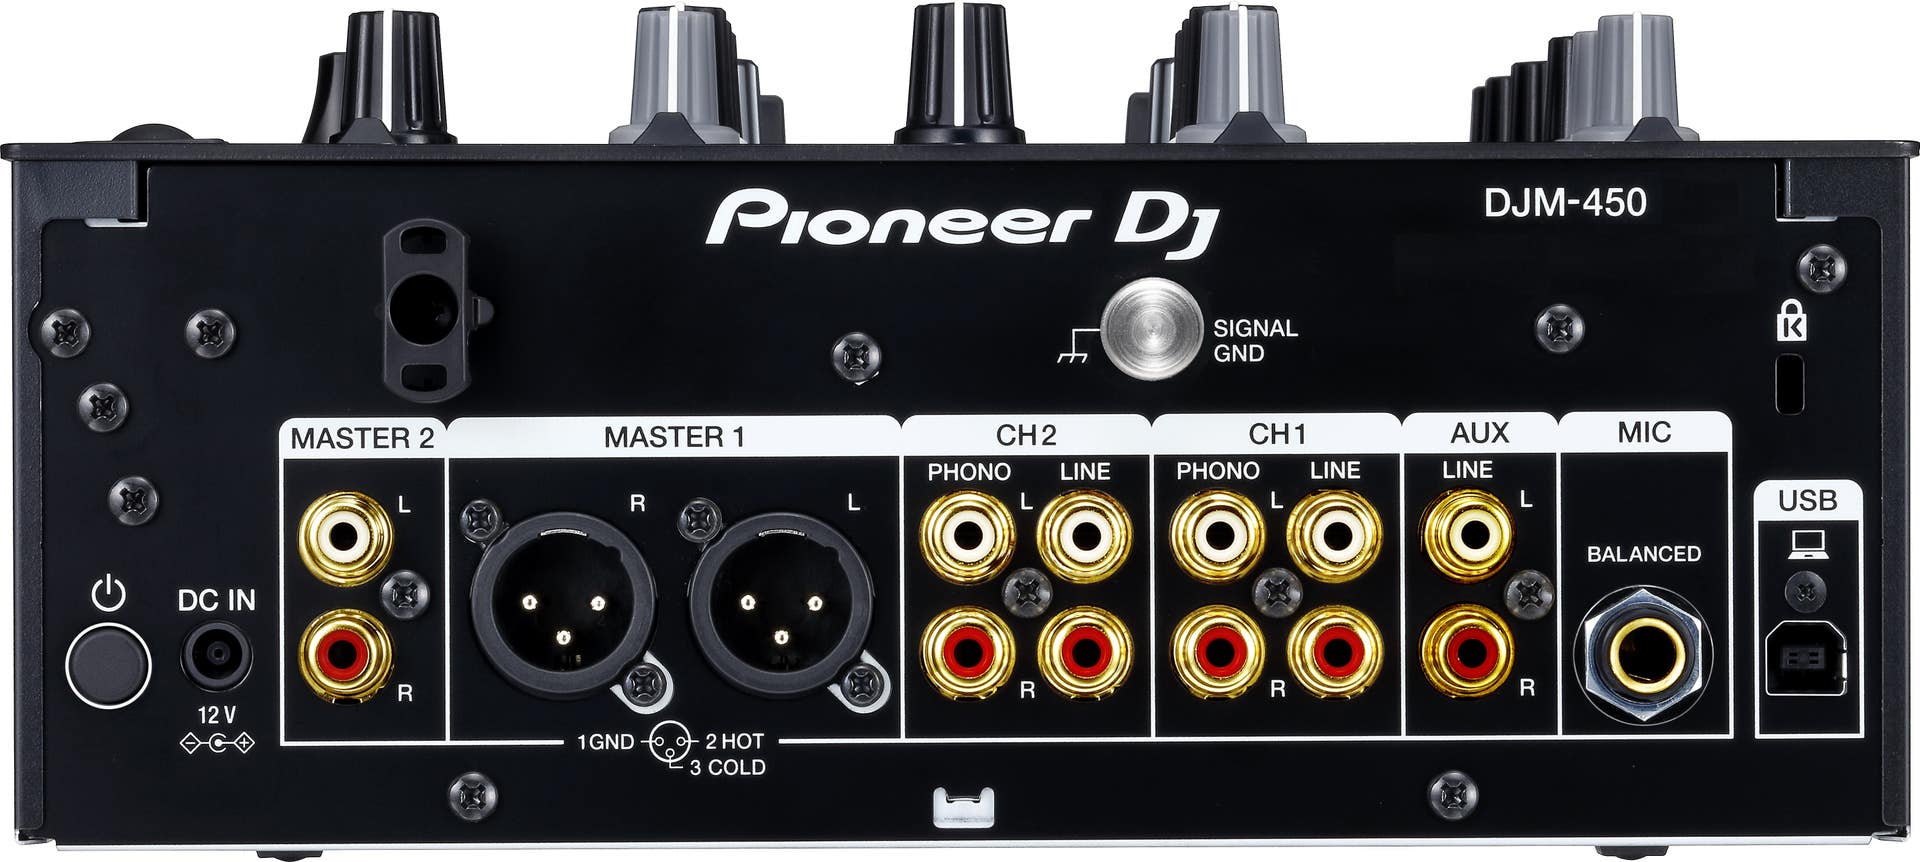 Pioneer DJM450 2 Channel DJ Mixer (DJM-450)